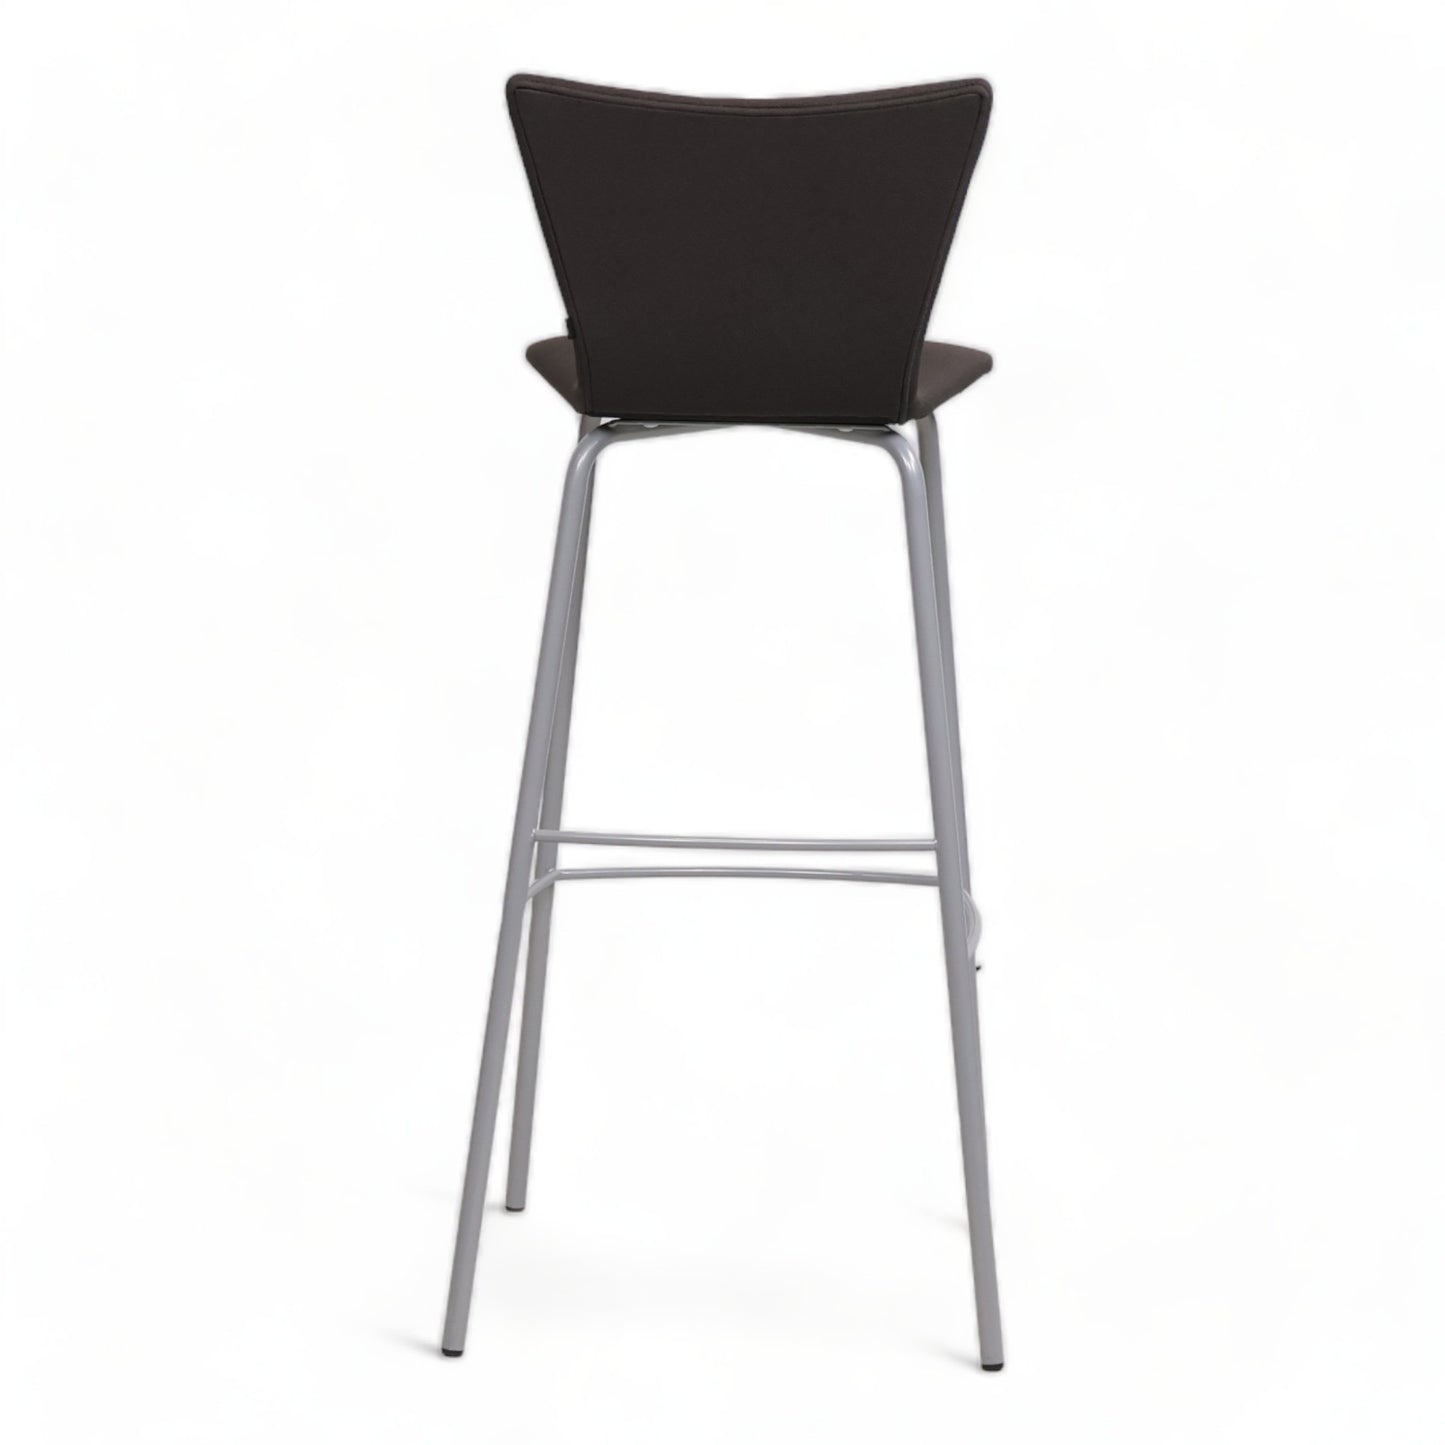 Nyrenset | ScanSørlie barstol i fargen sort